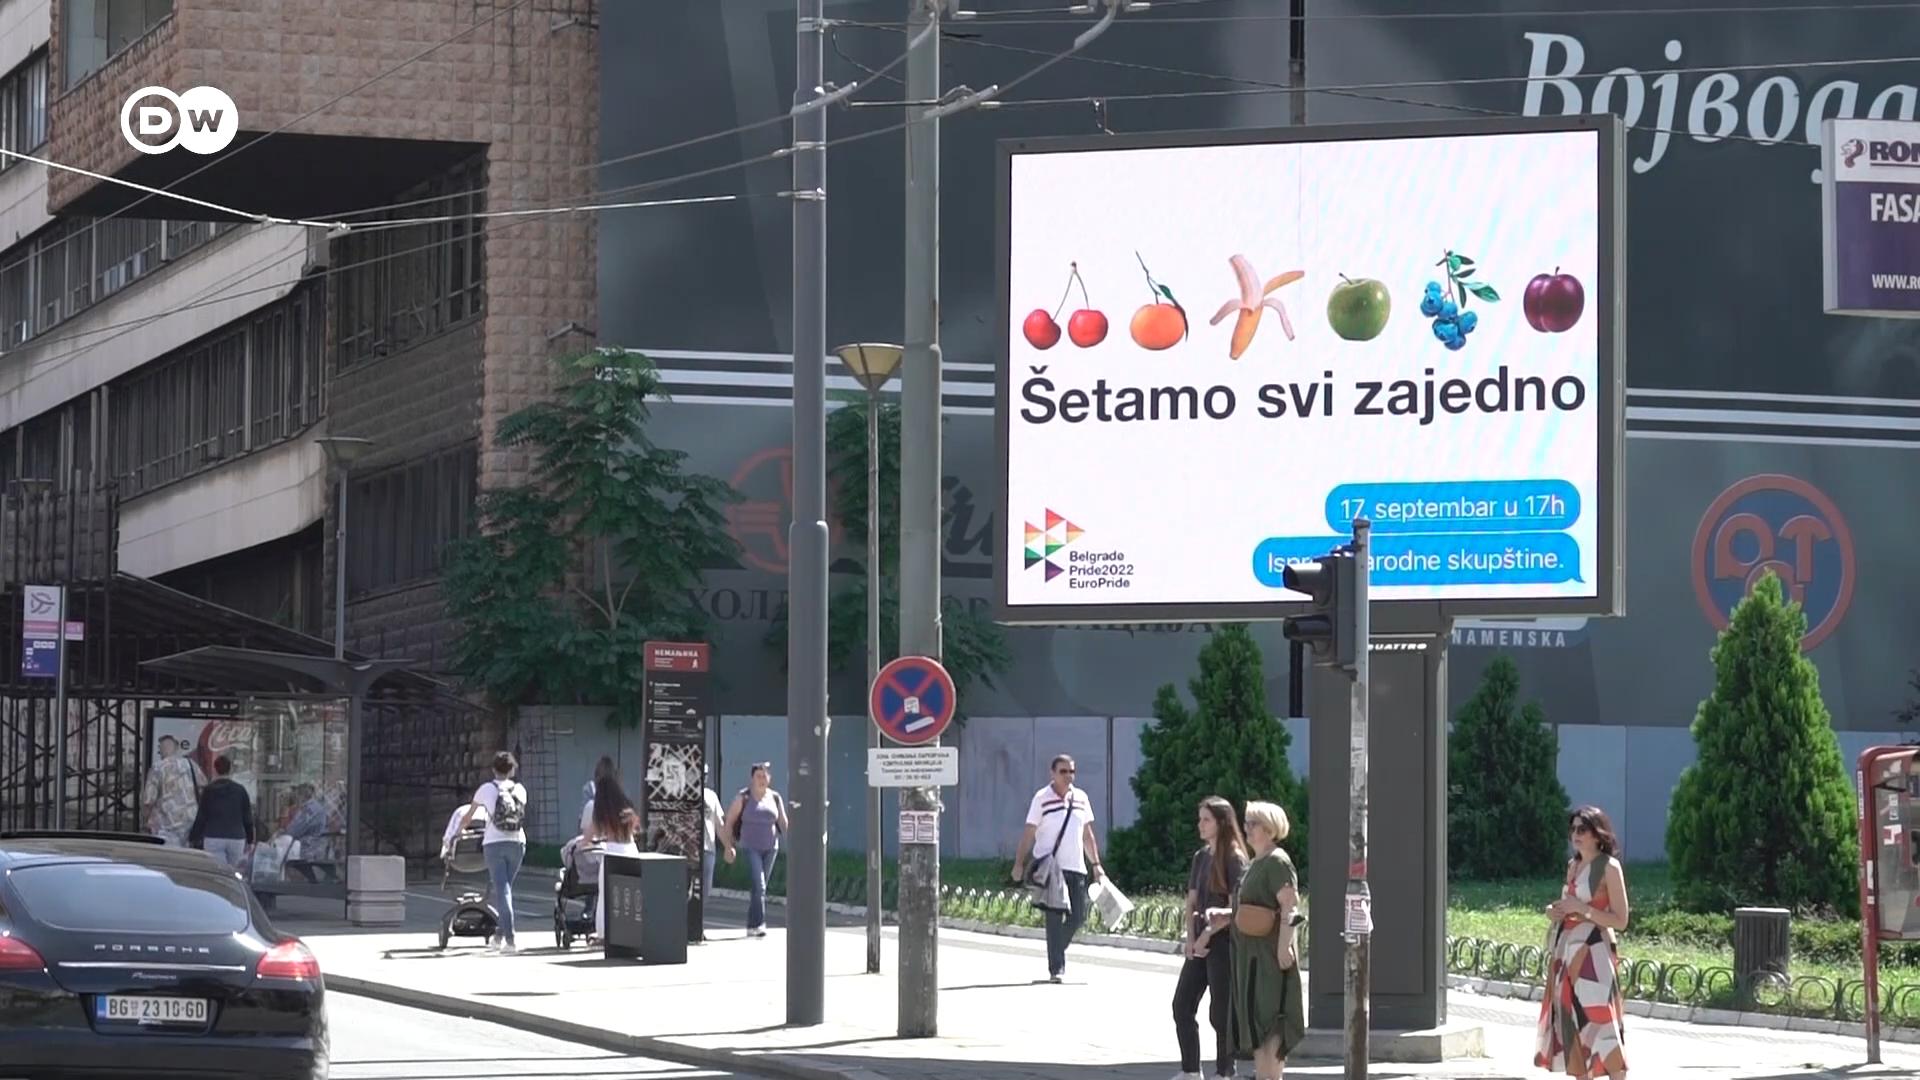 Serbien hat die Europride-Parade in Belgrad abgesagt. Die LGBTQ-Gemeinschaft reagiert mit Enttäuschung - und Widerstand.